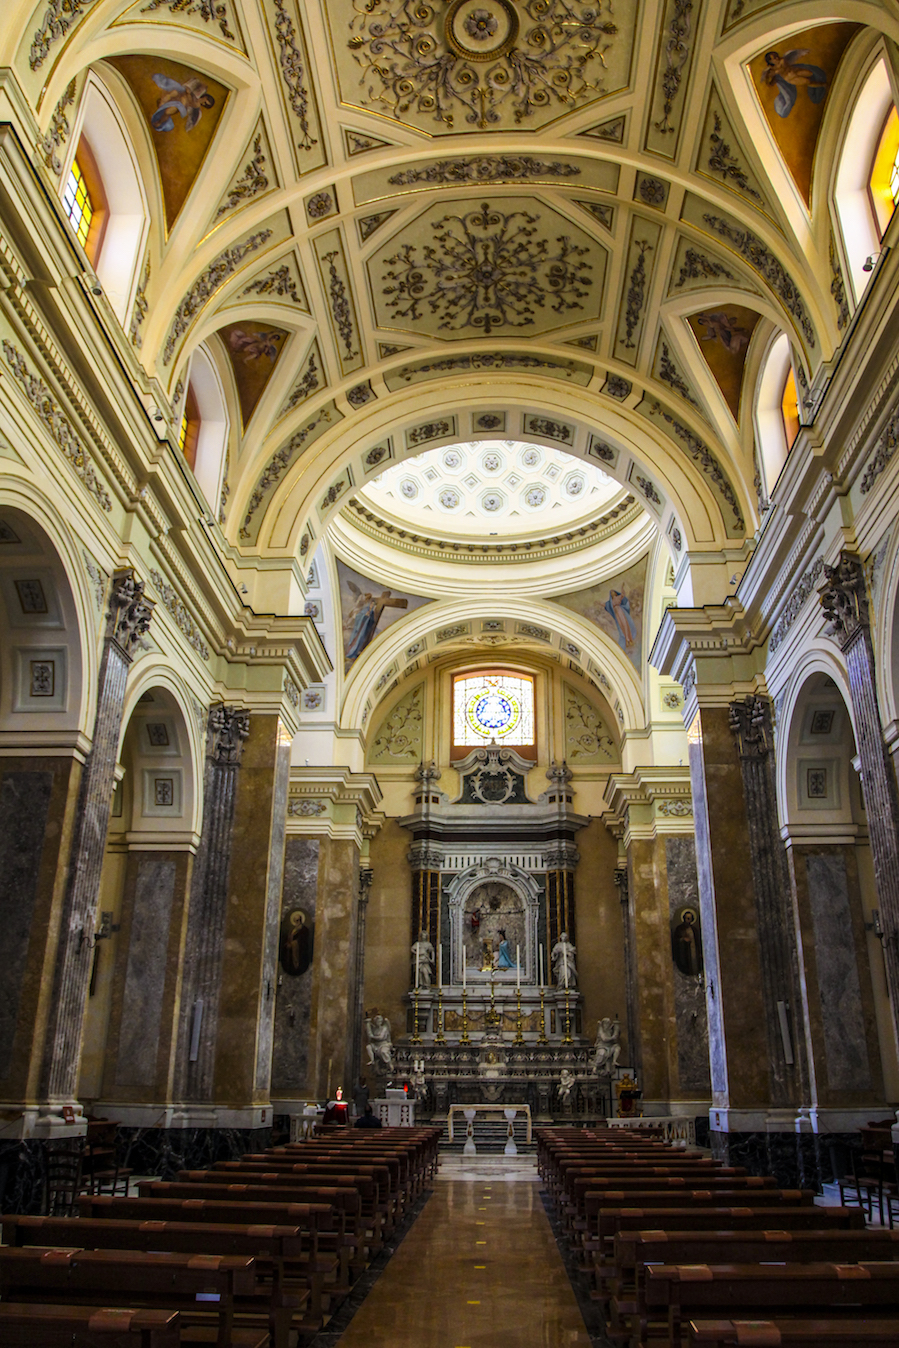   Altare Maggiore
